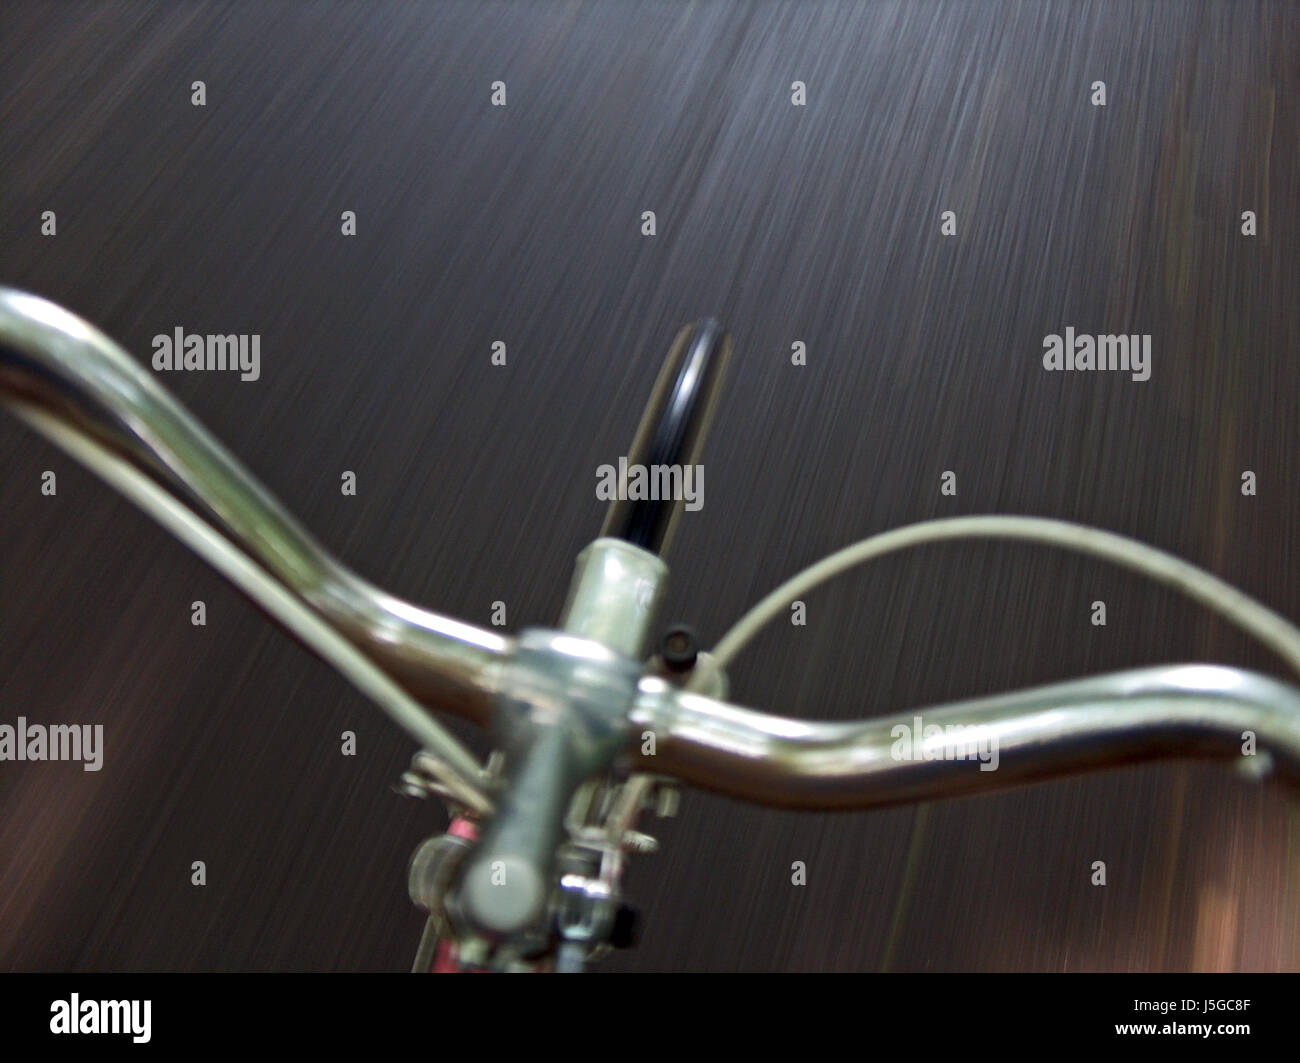 Drive travel via cromo rapidità motion blur manubrio pneumatico per bicicletta Foto Stock